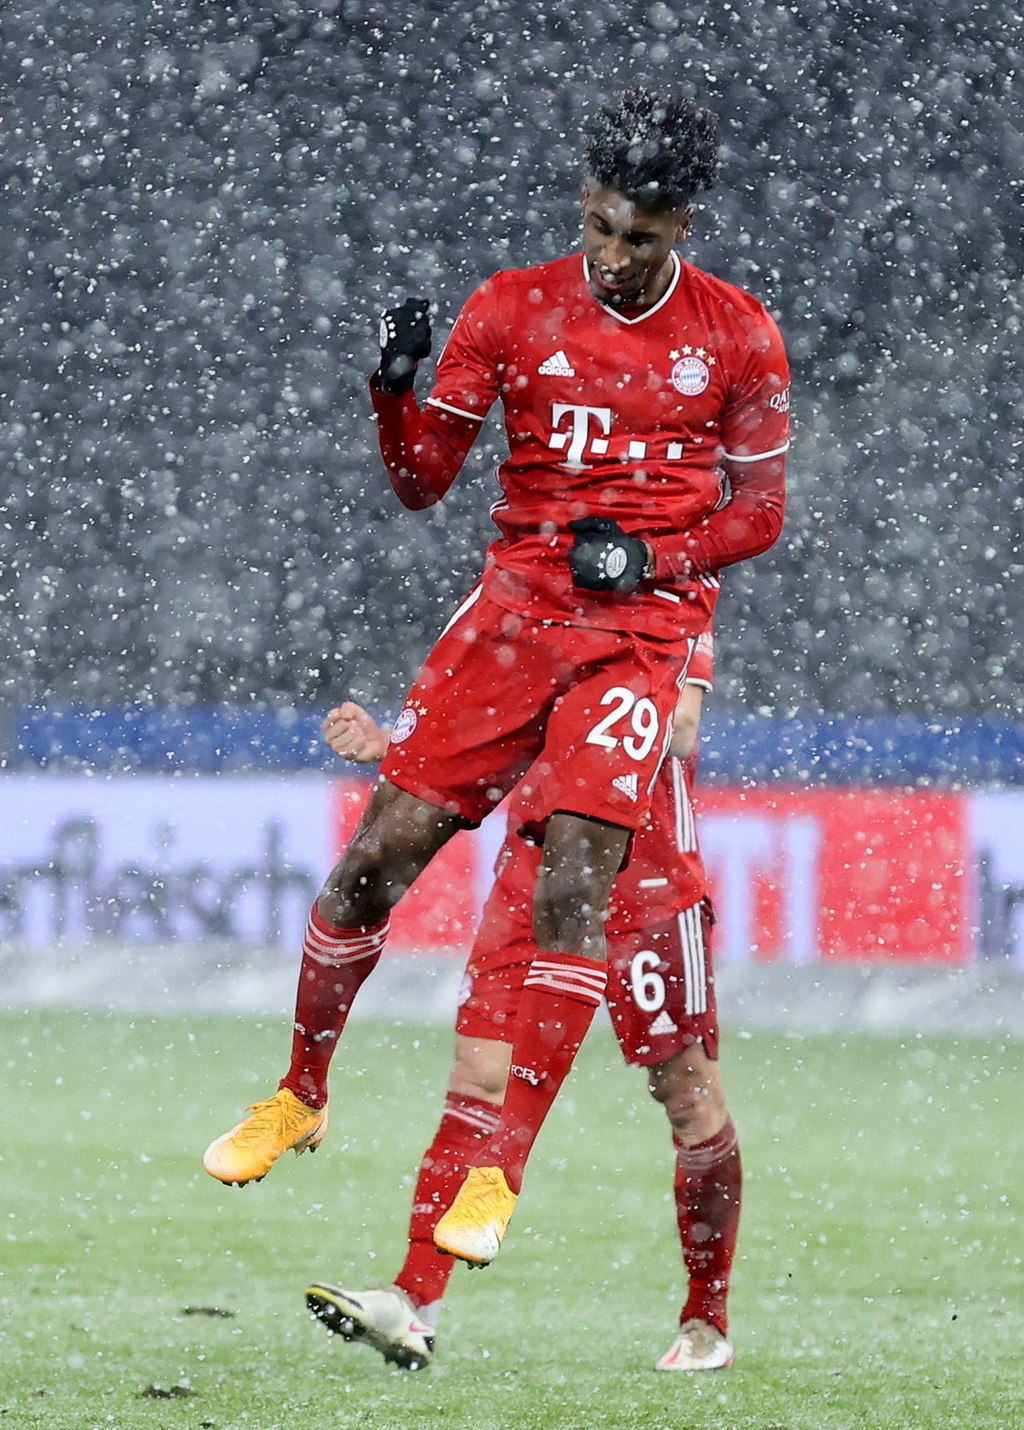 En medio de una nevada, Kingsley Coman celebra luego de marcar el único tanto del juego, en la victoria del Bayern sobre Hertha Berlín. (EFE)